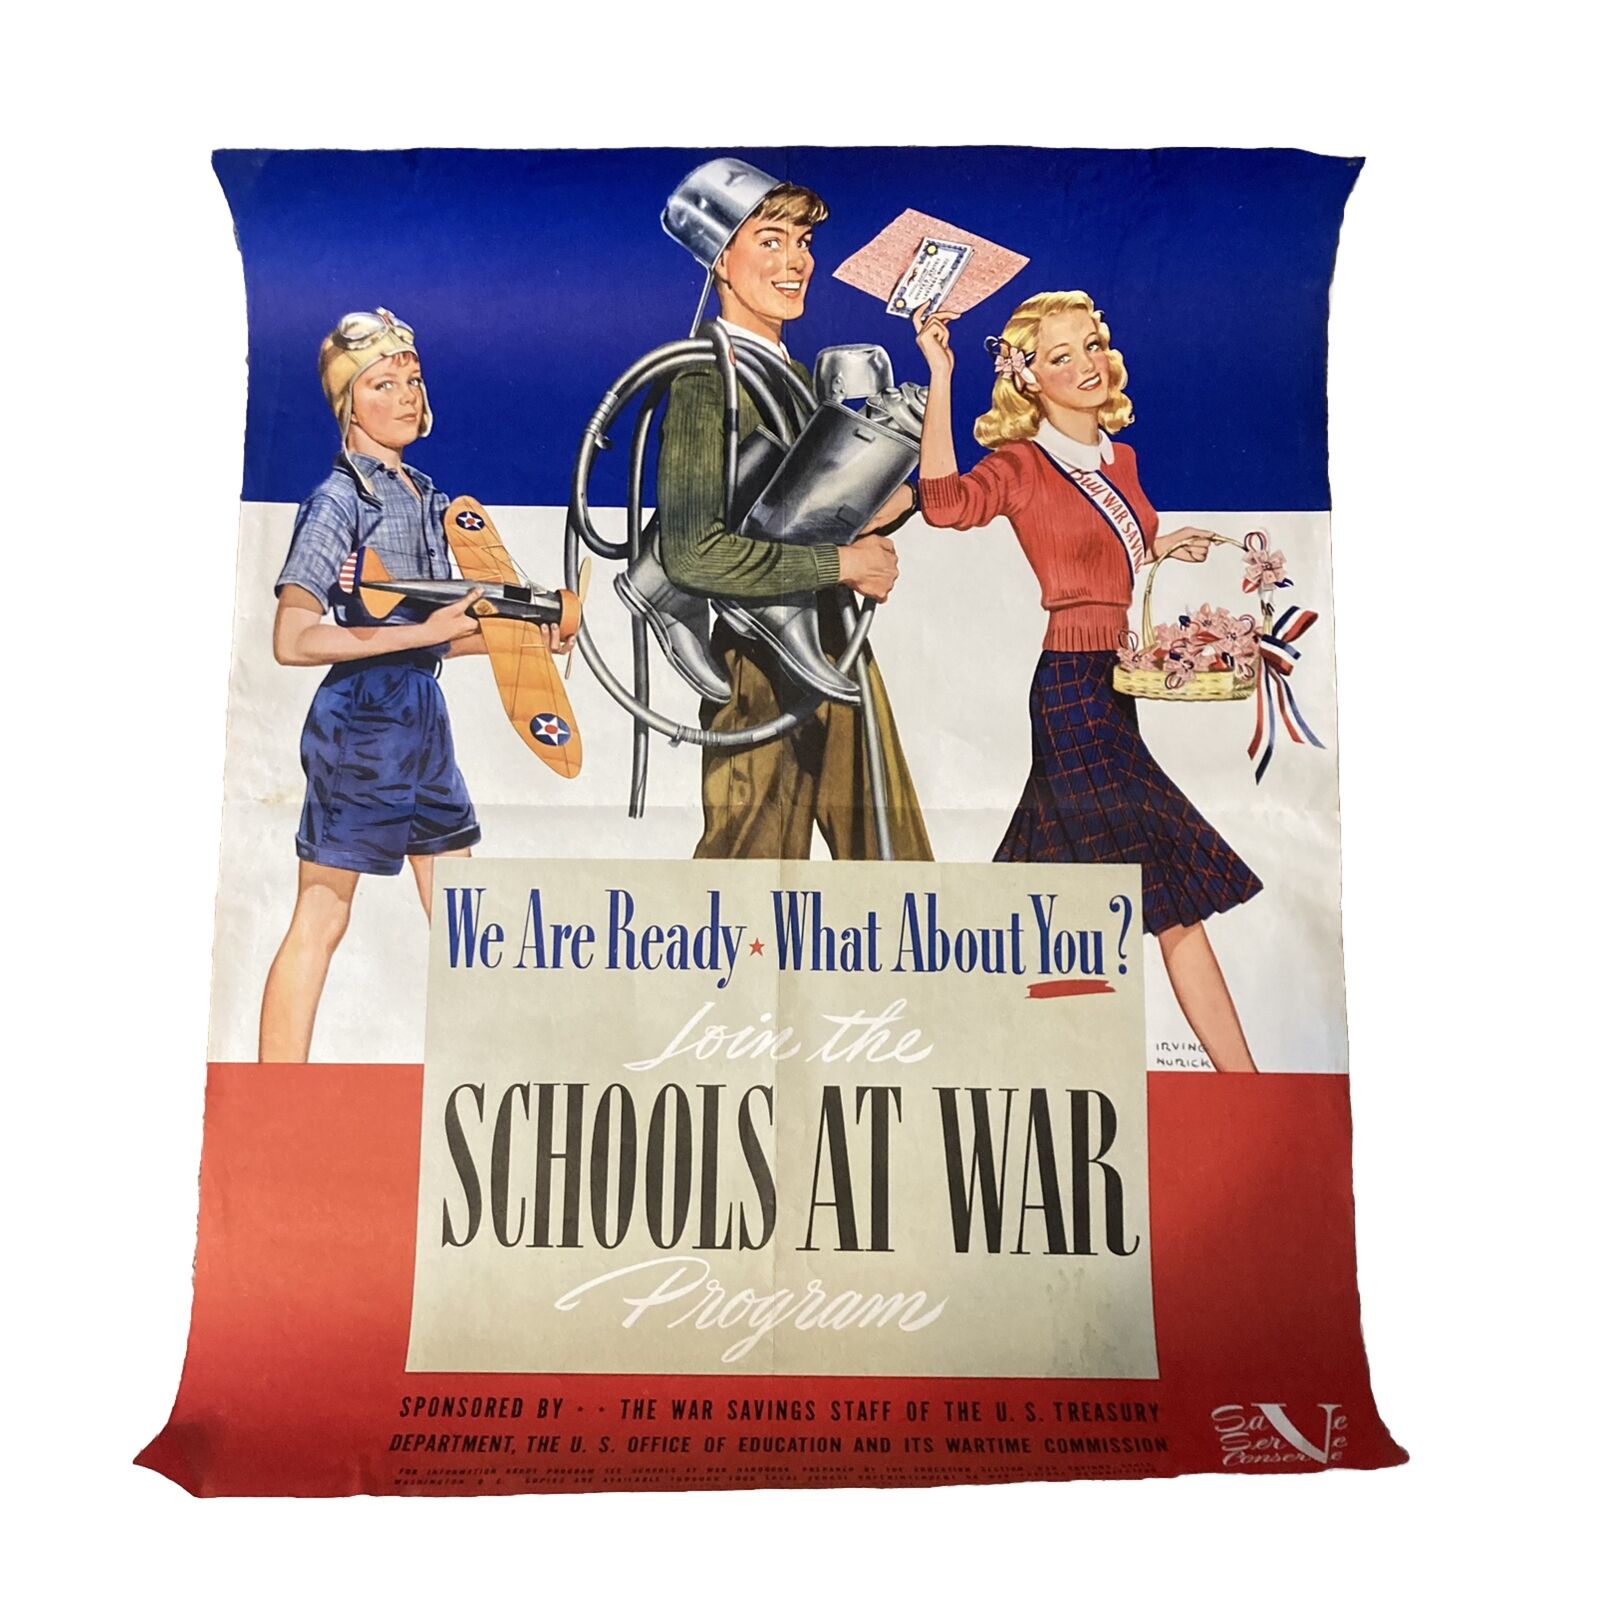 World War ll poster “School at War” 28” X 22”. Artist Irving Nurick